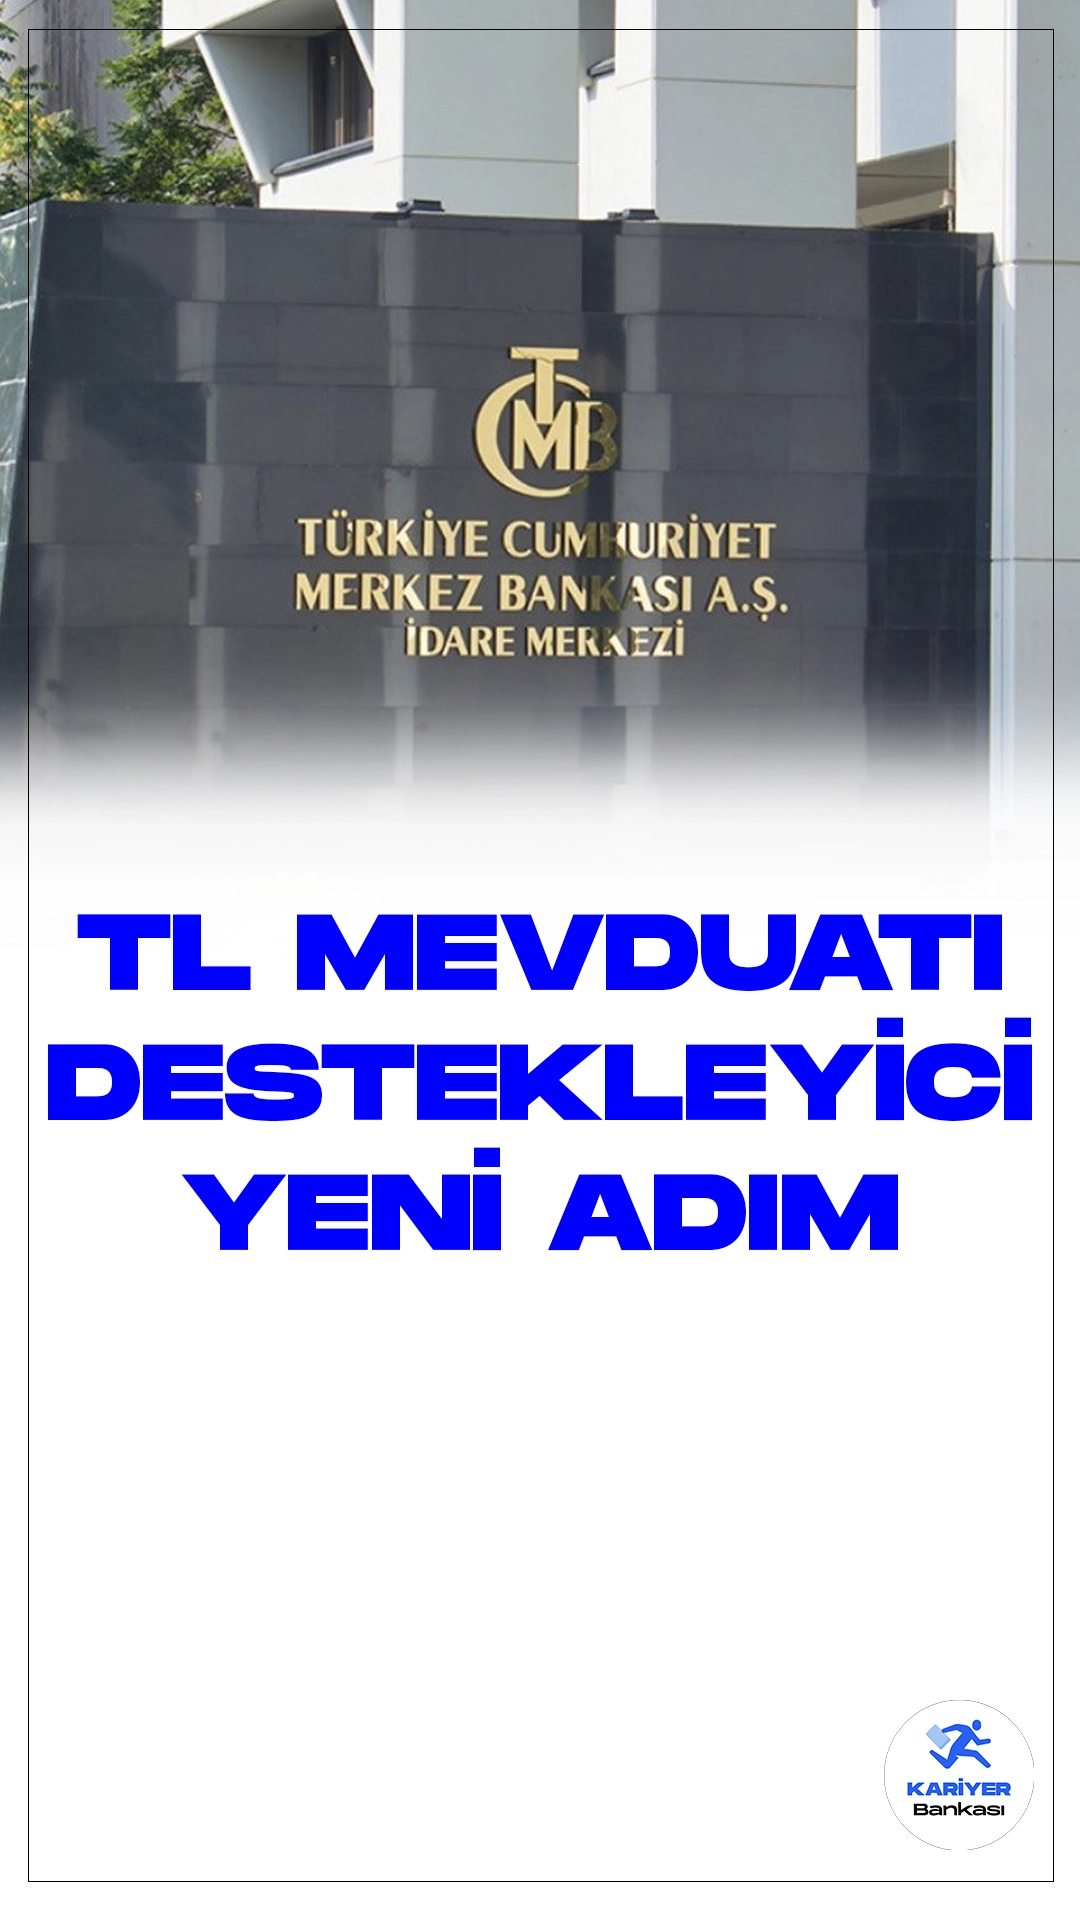 TCMB'den TL Mevduatı Desteklemek İçin Yeni Adım.TCMB, Türk lirası mevduata geçişin güçlendirilmesi amacıyla önemli bir değişikliği duyurdu. Yapılan açıklama, zorunlu karşılıkların düzenlenmesine yönelik alınan kararları içeriyor.